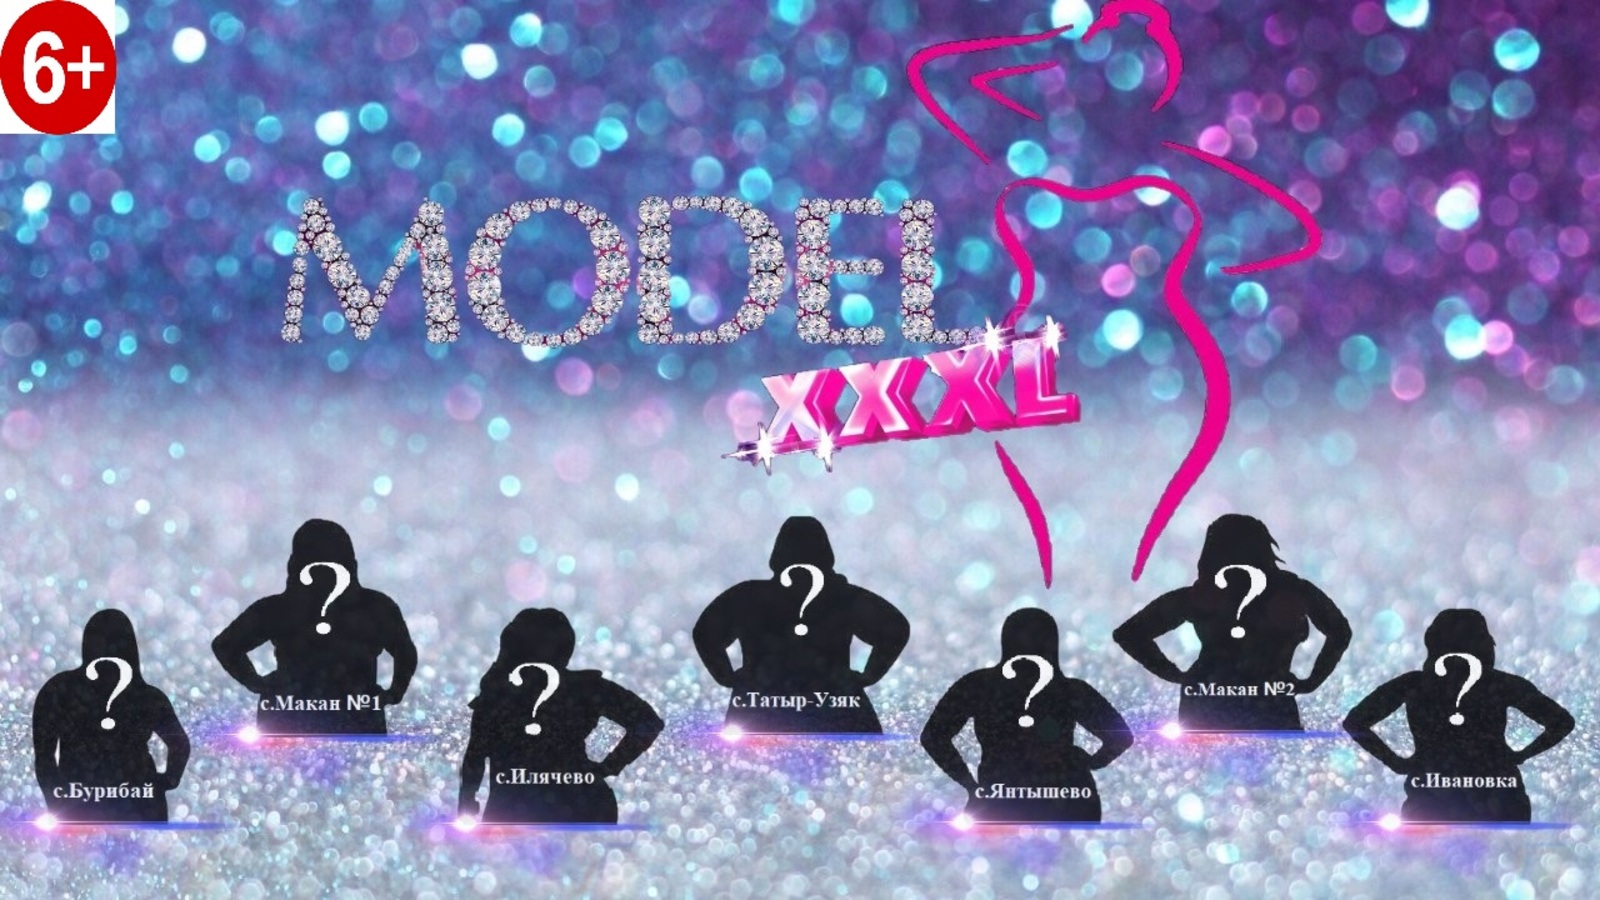 Сегодня в селе Акъяр состоится шоу-конкурс красоты и грации #MODEL_XXXL